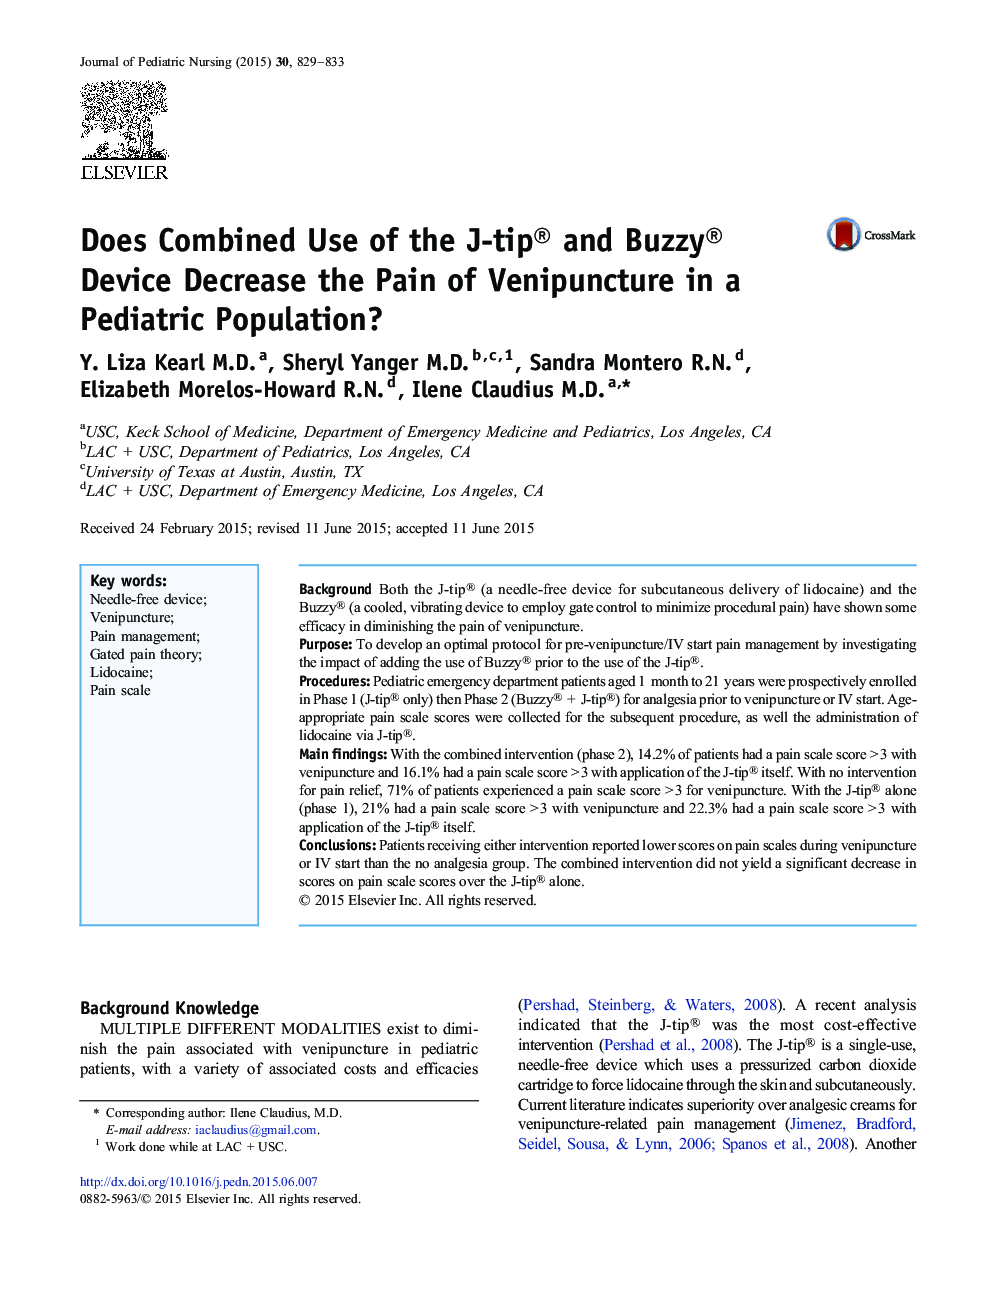 آیا استفاده ترکیبی از دستگاه J-tip® و Buzzy® باعث کاهش درد ناحیه تناسلی در یک جمعیت اطفال می شود؟